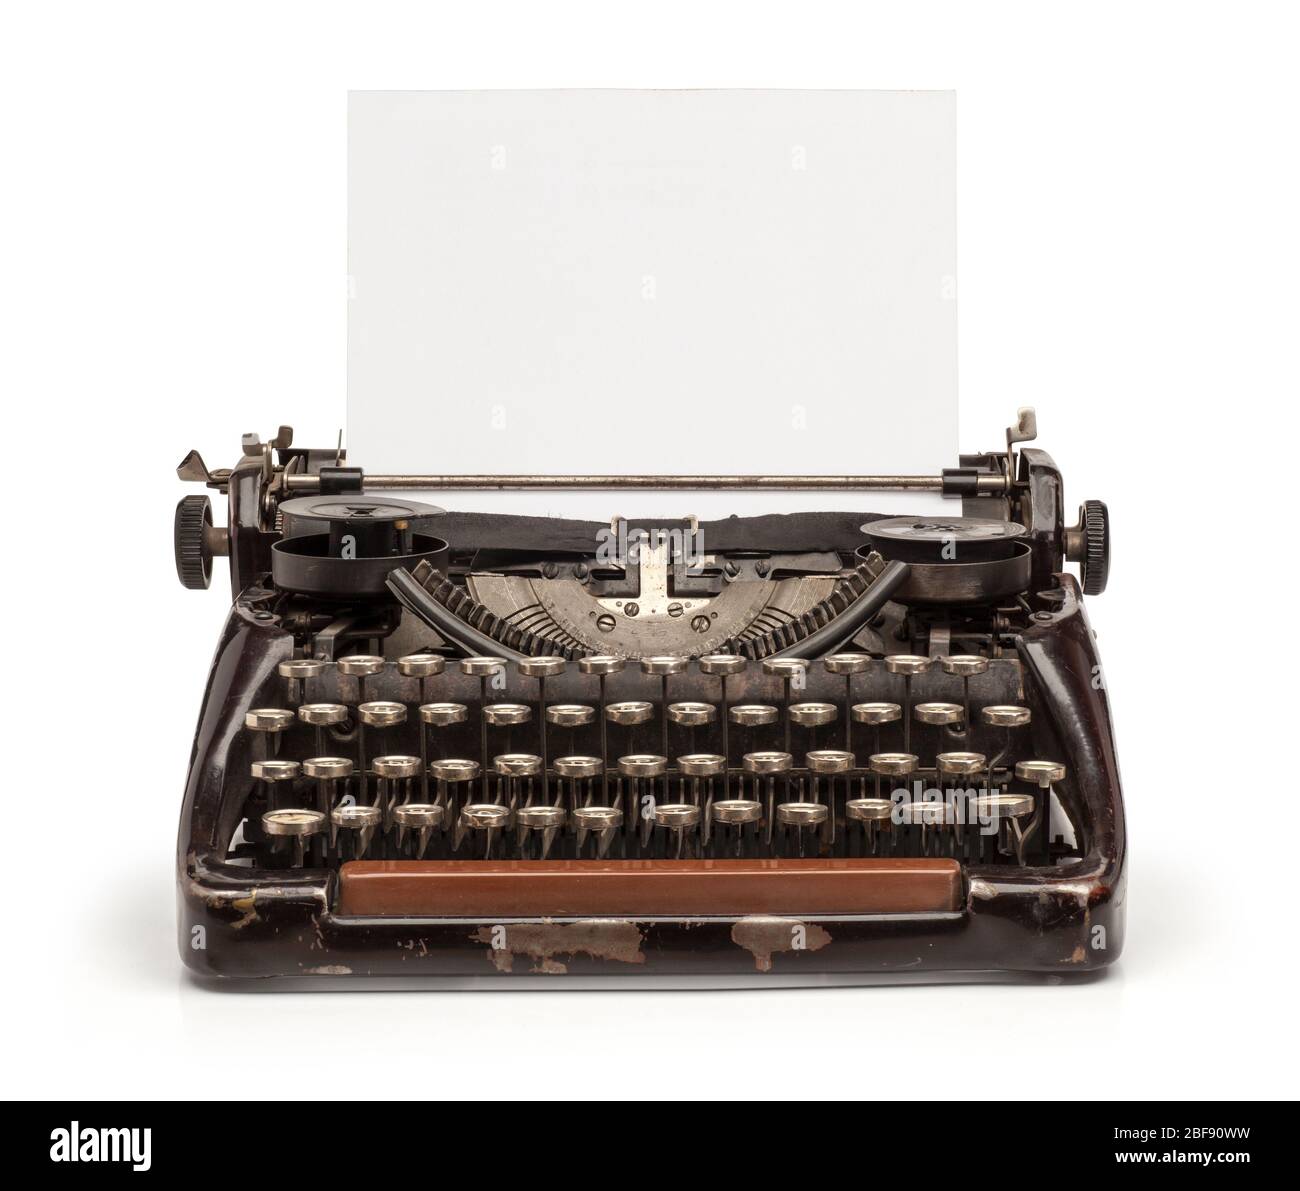 Ancienne machine à écrire vintage et une feuille de papier vierge insérée. Isolé sur fond blanc. Banque D'Images